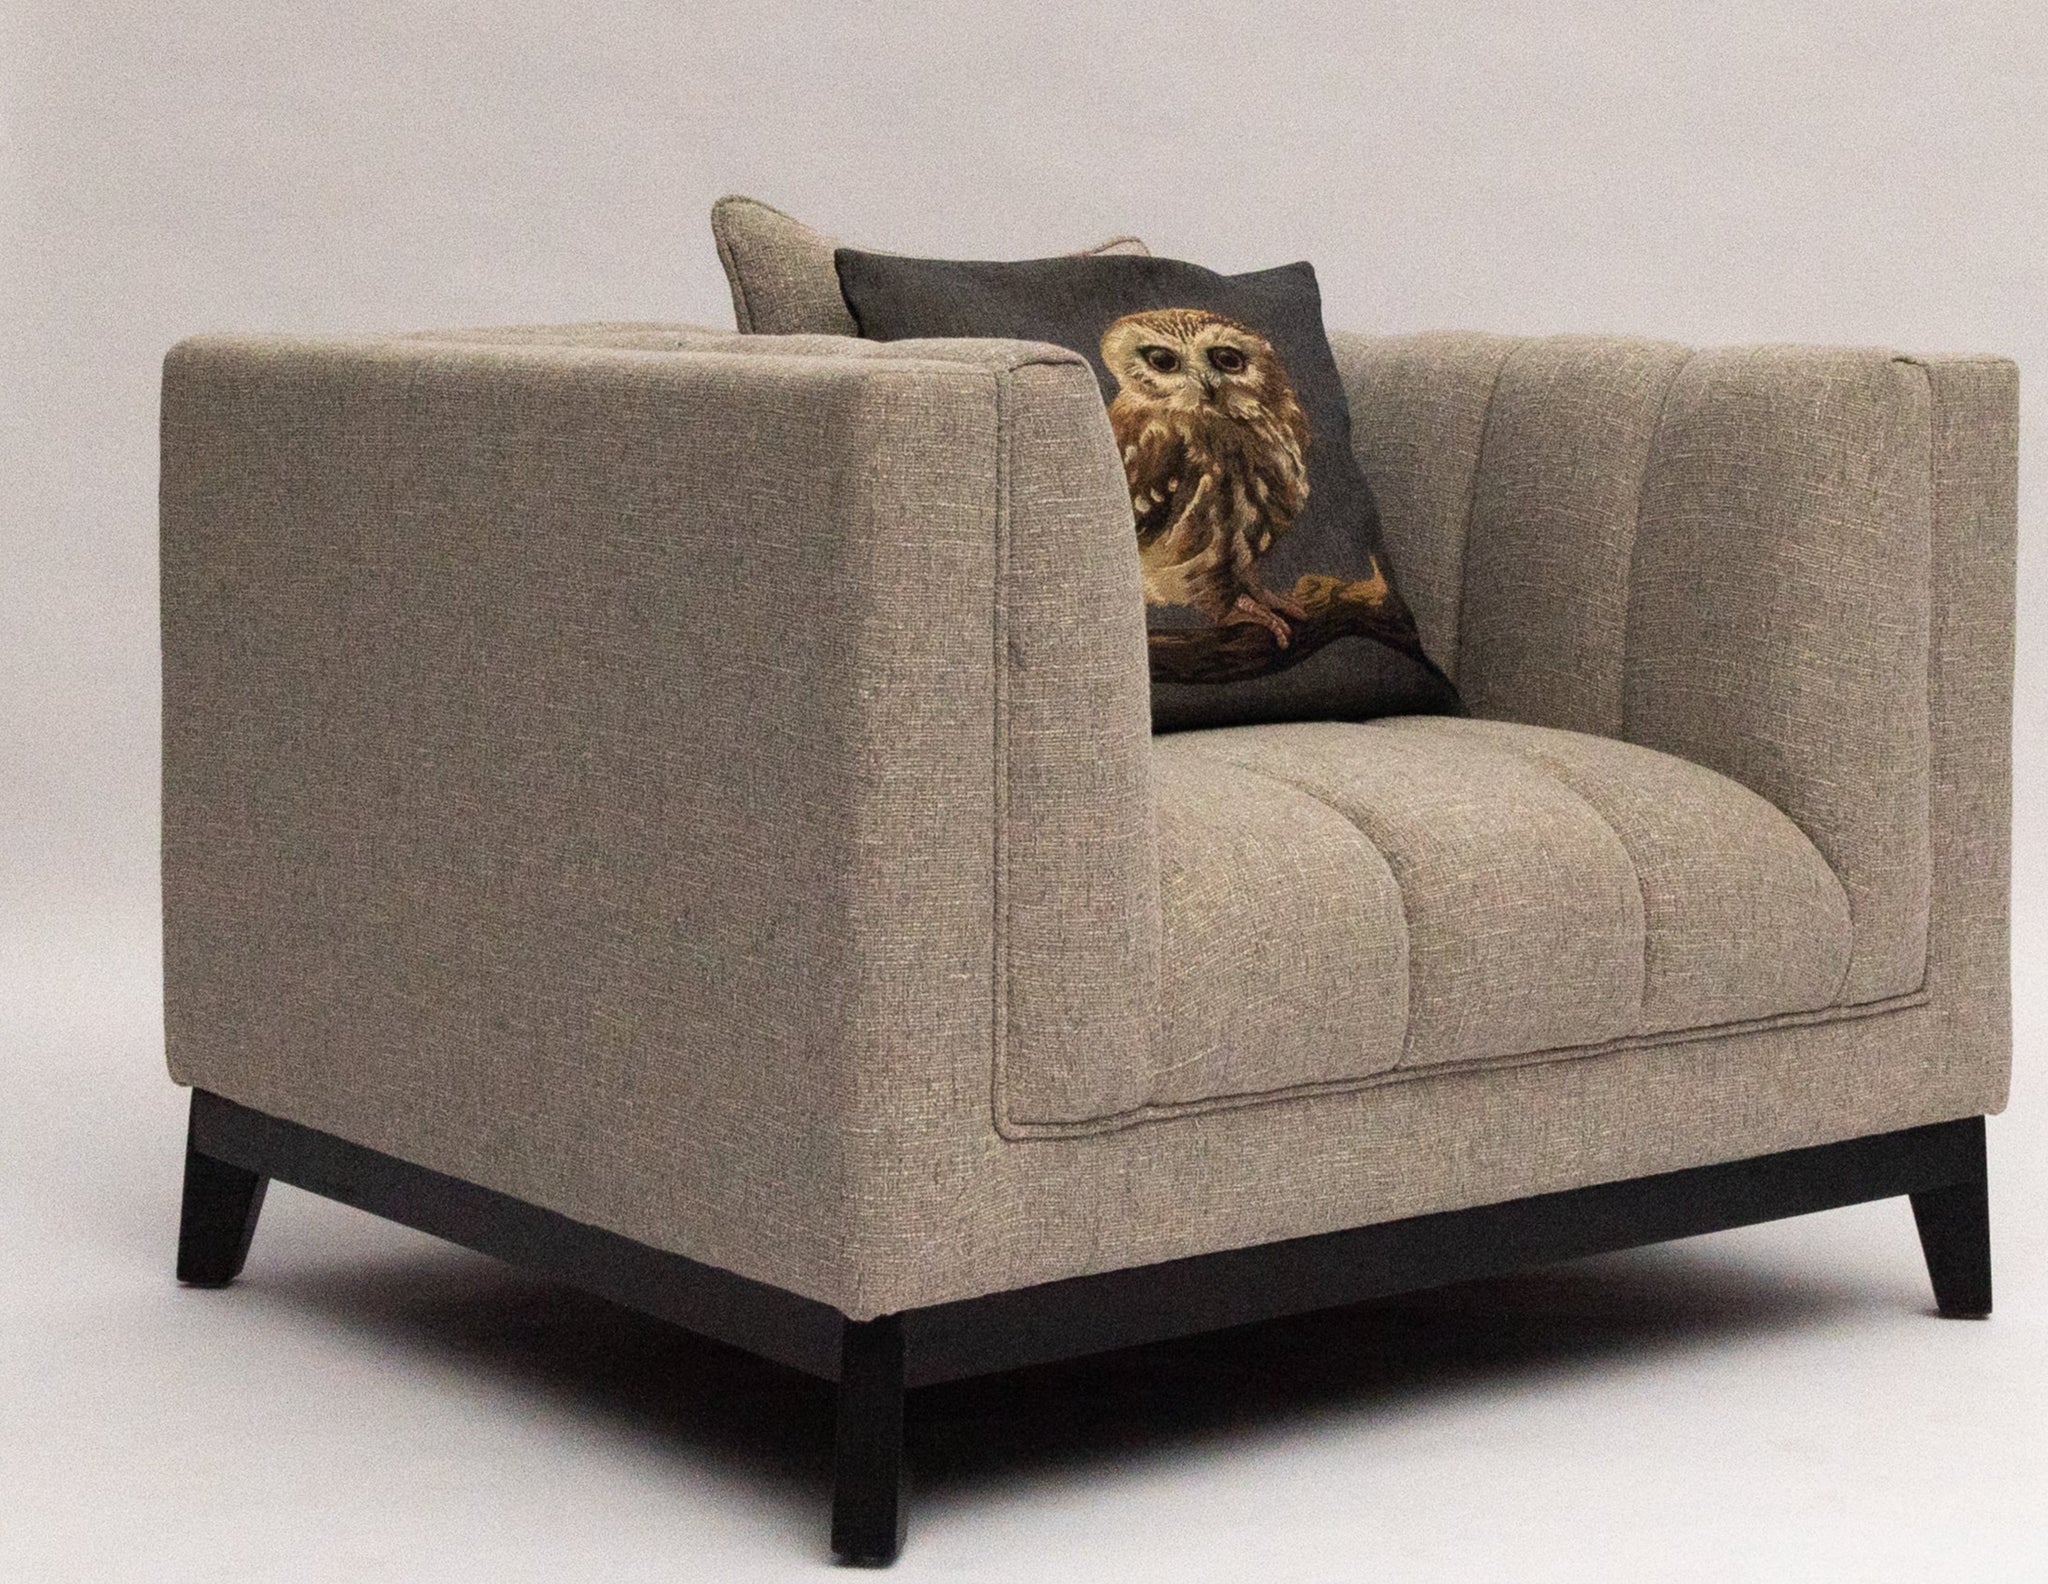 Solo-Comf Grey Sofa